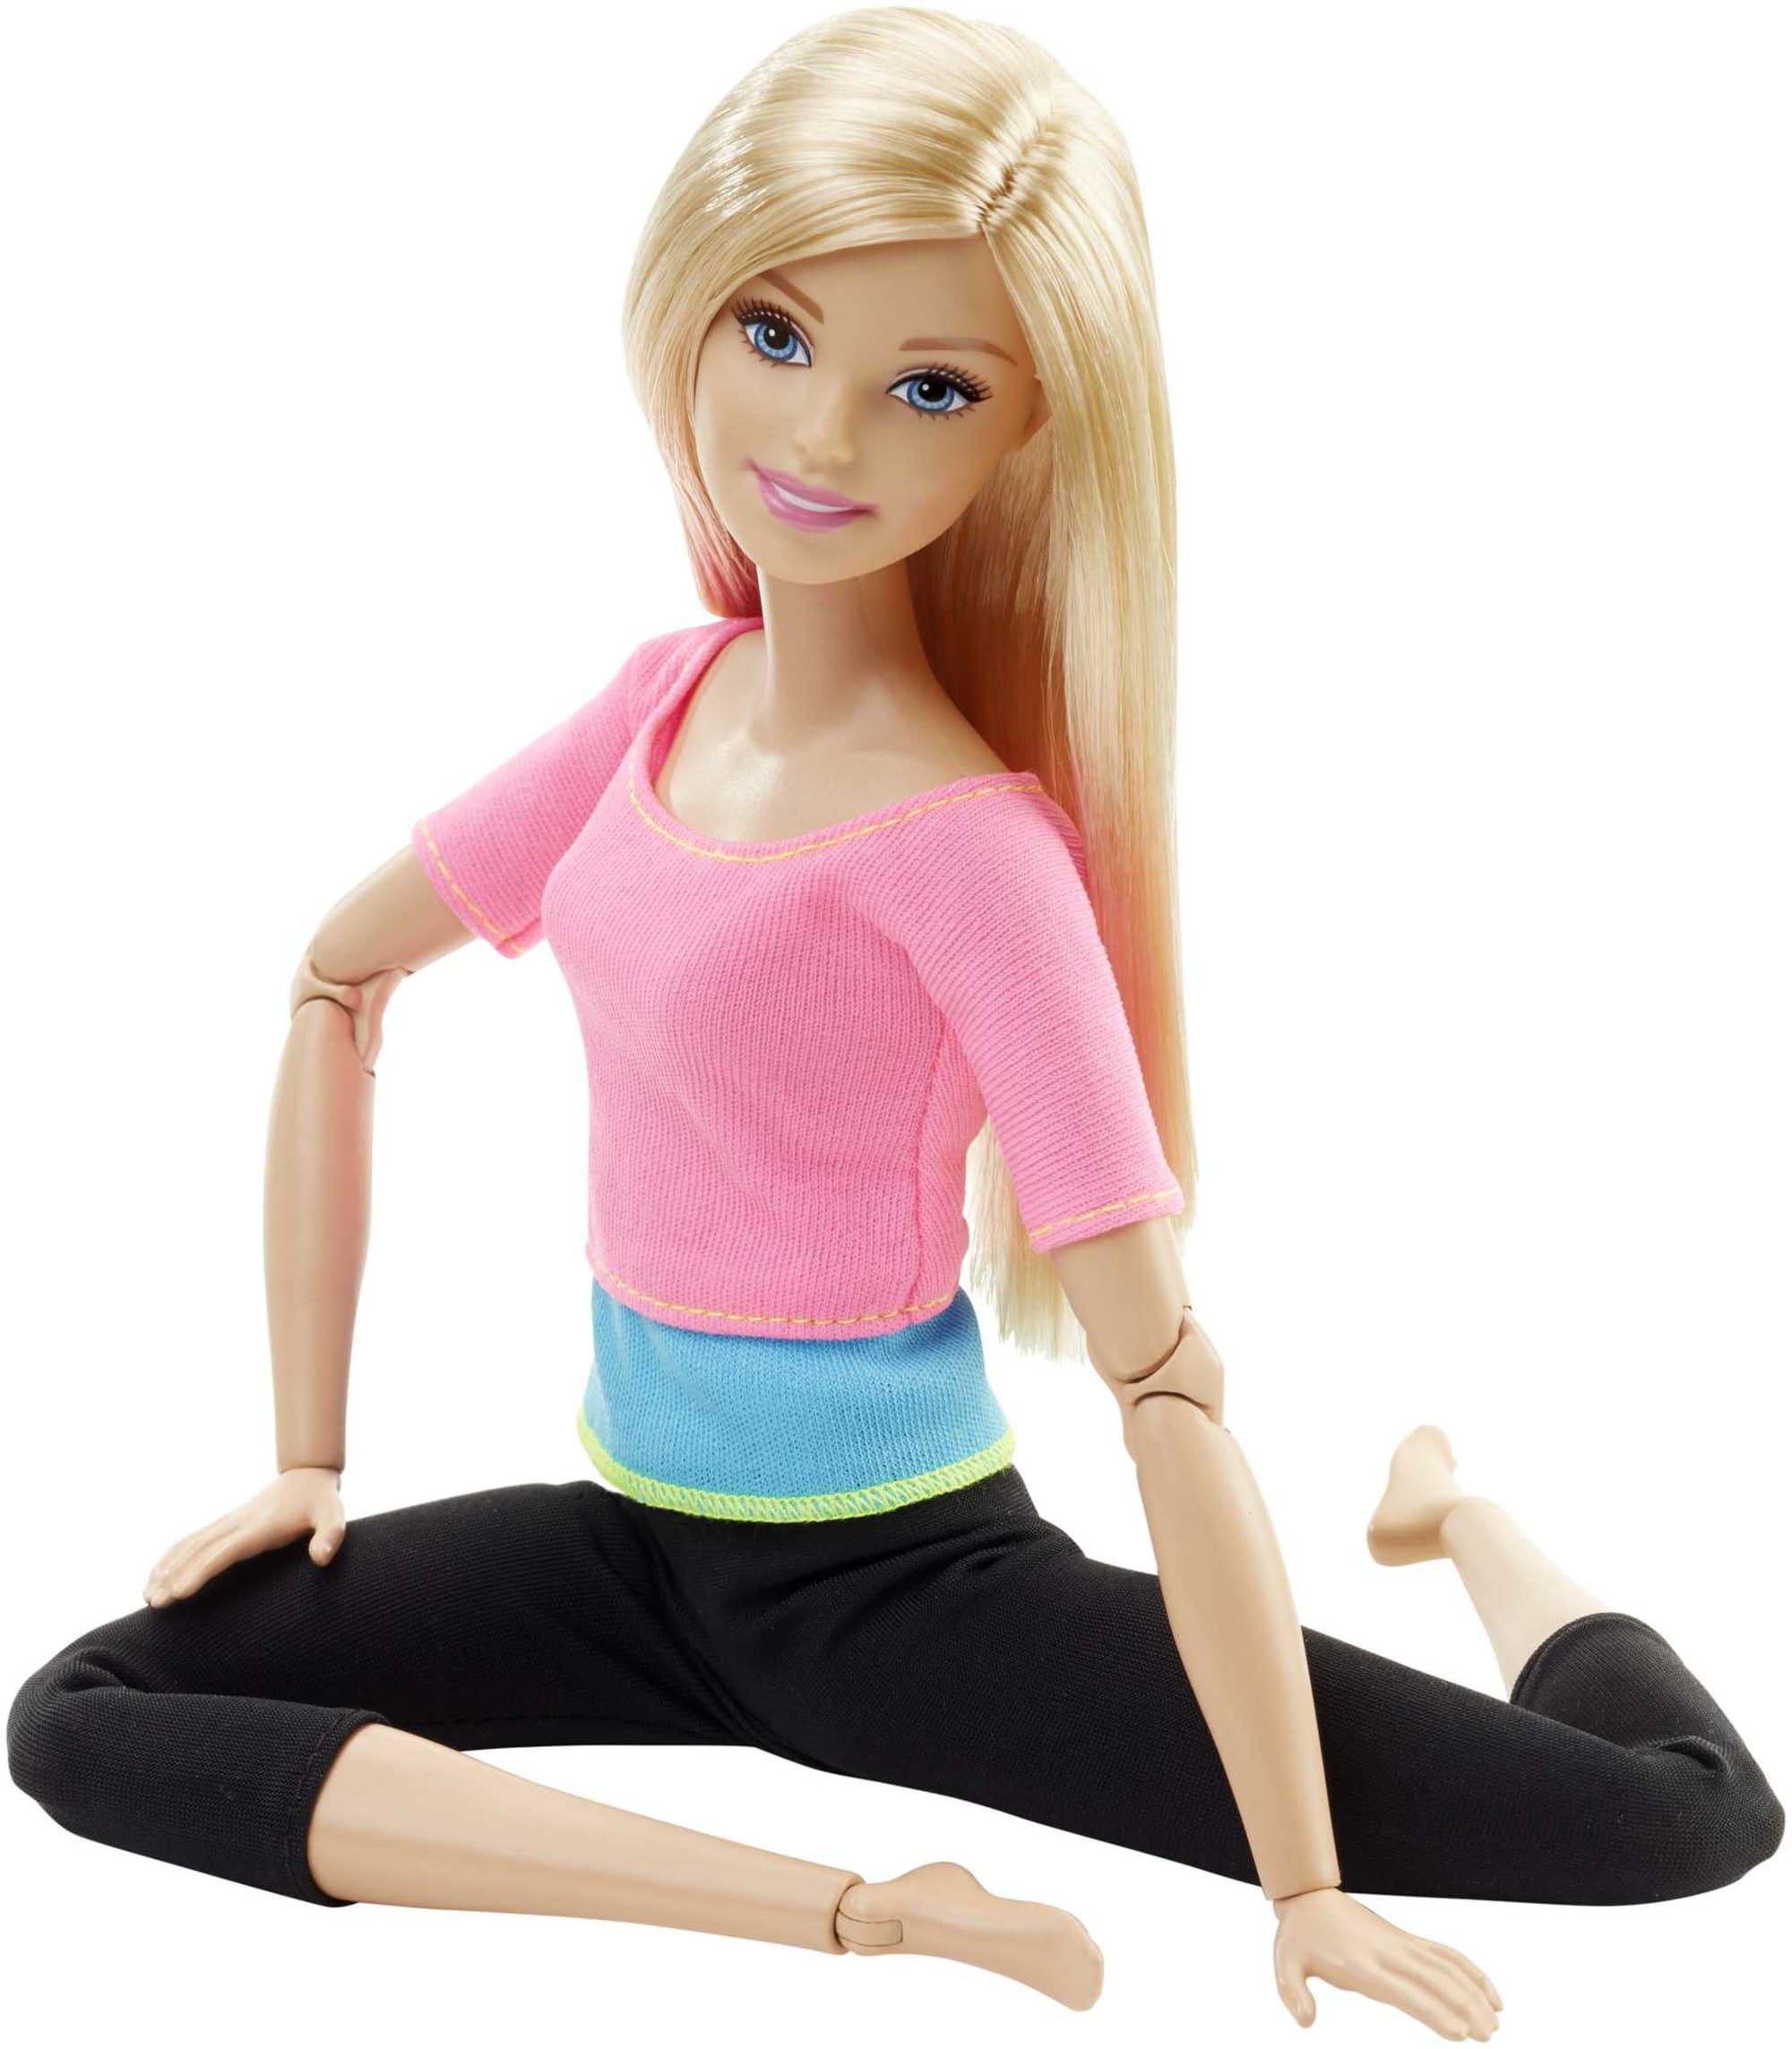 Barbie Wellness Playset Sport avec poupée et accessoires